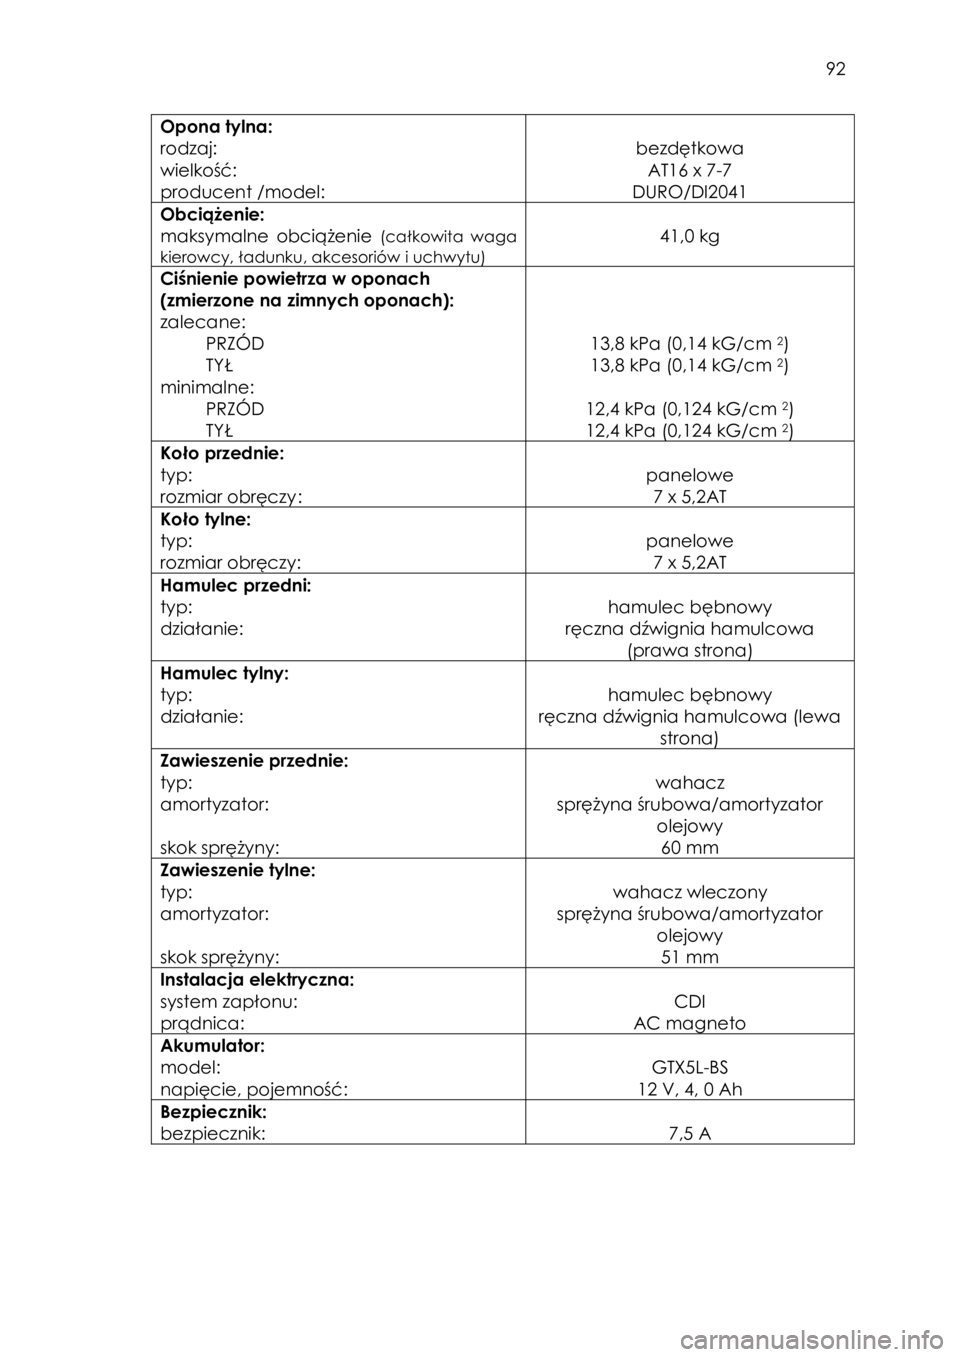 YAMAHA YFZ50 2016  Instrukcja obsługi (in Polish)  92 
Opona tylna: 
rodzaj: 
wielkość: 
producent /model: 
 
bezdętkowa 
AT16 x 7-7  
DURO/DI2041  
Obciążenie: 
maksymalne  obciążenie (całkowita  waga 
kierowcy, ładunku, akcesoriów i uchwy